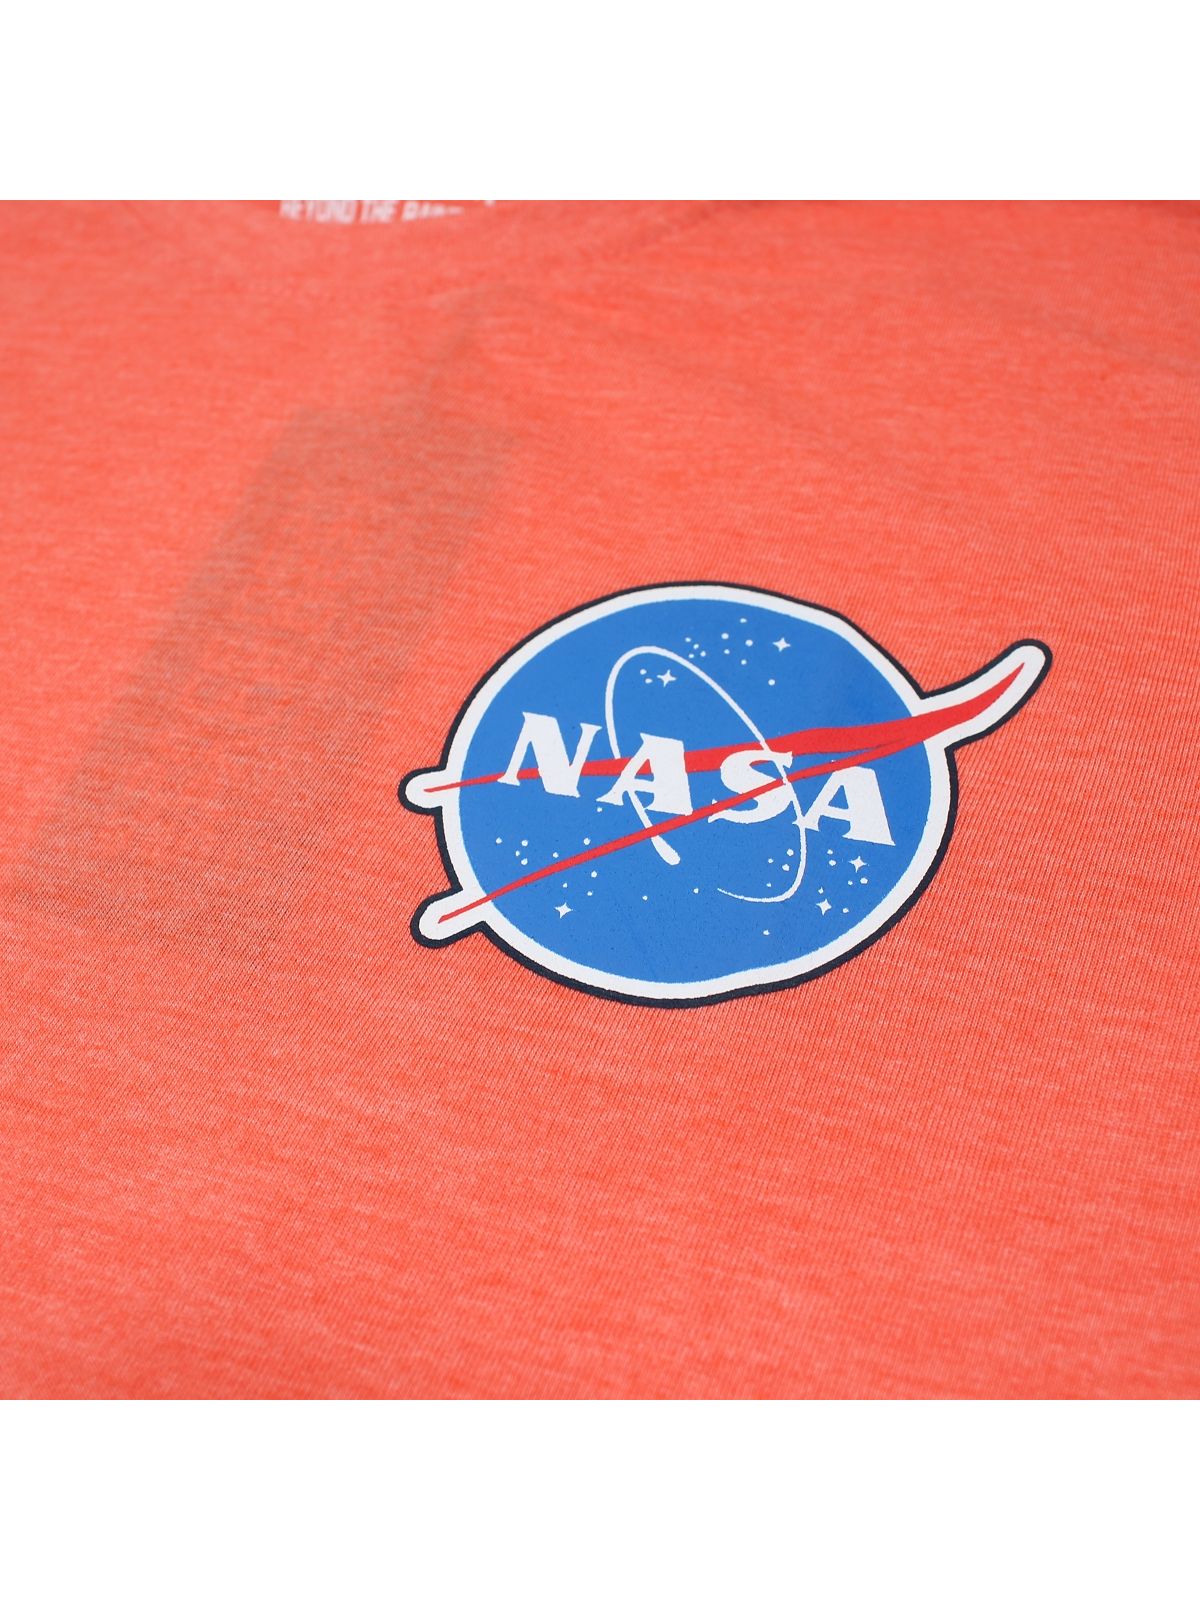 Maglietta per bambini della NASA